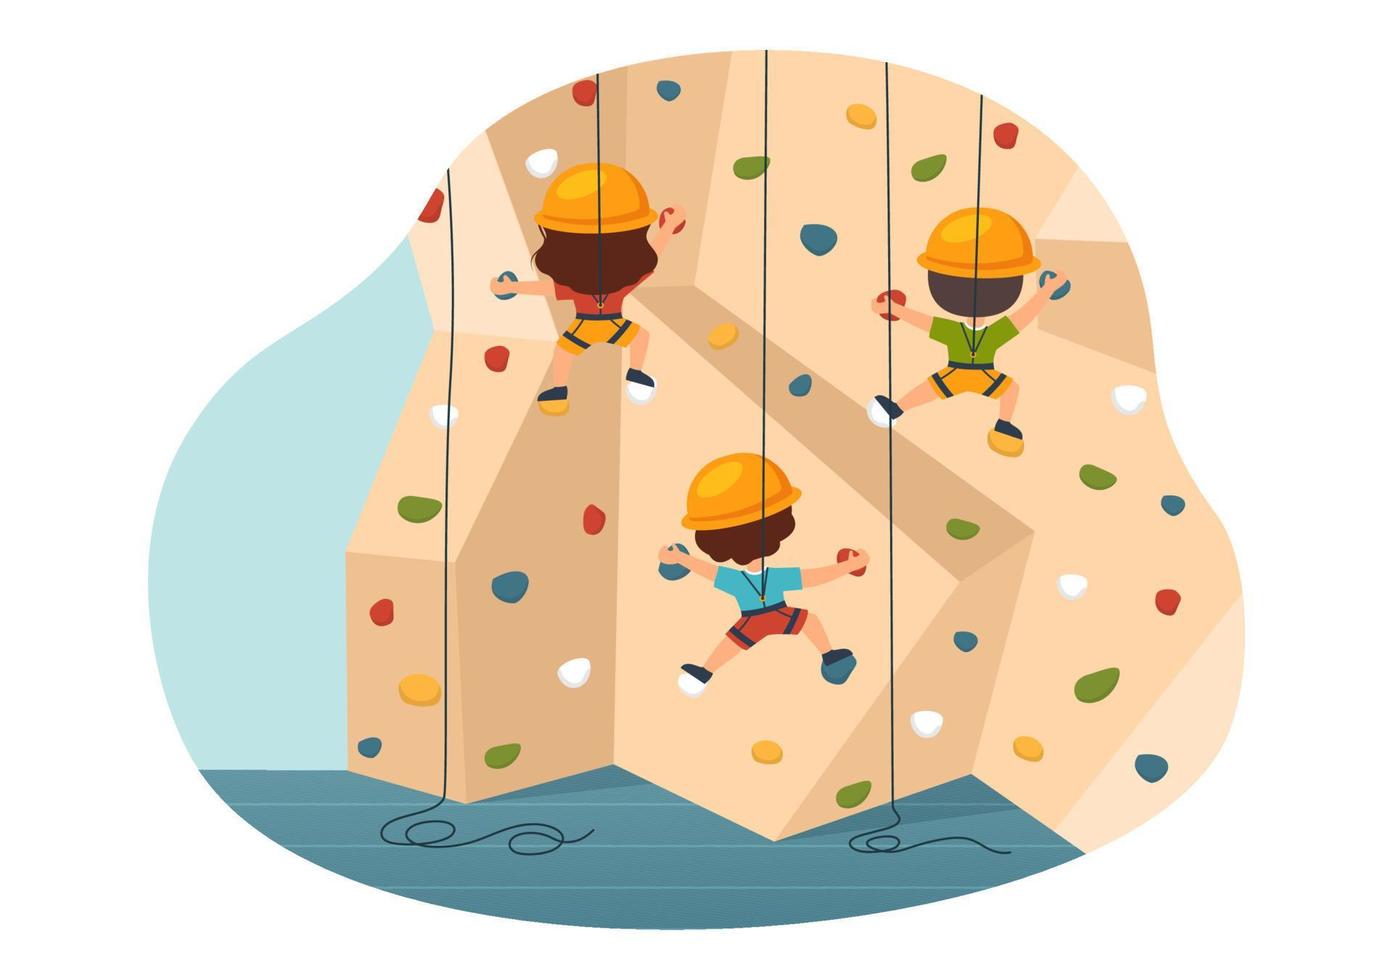 ilustración de escalada de acantilados con niños escalador escalar pared de roca o acantilados de montaña y deporte de actividad extrema en plantilla dibujada a mano de dibujos animados planos vector